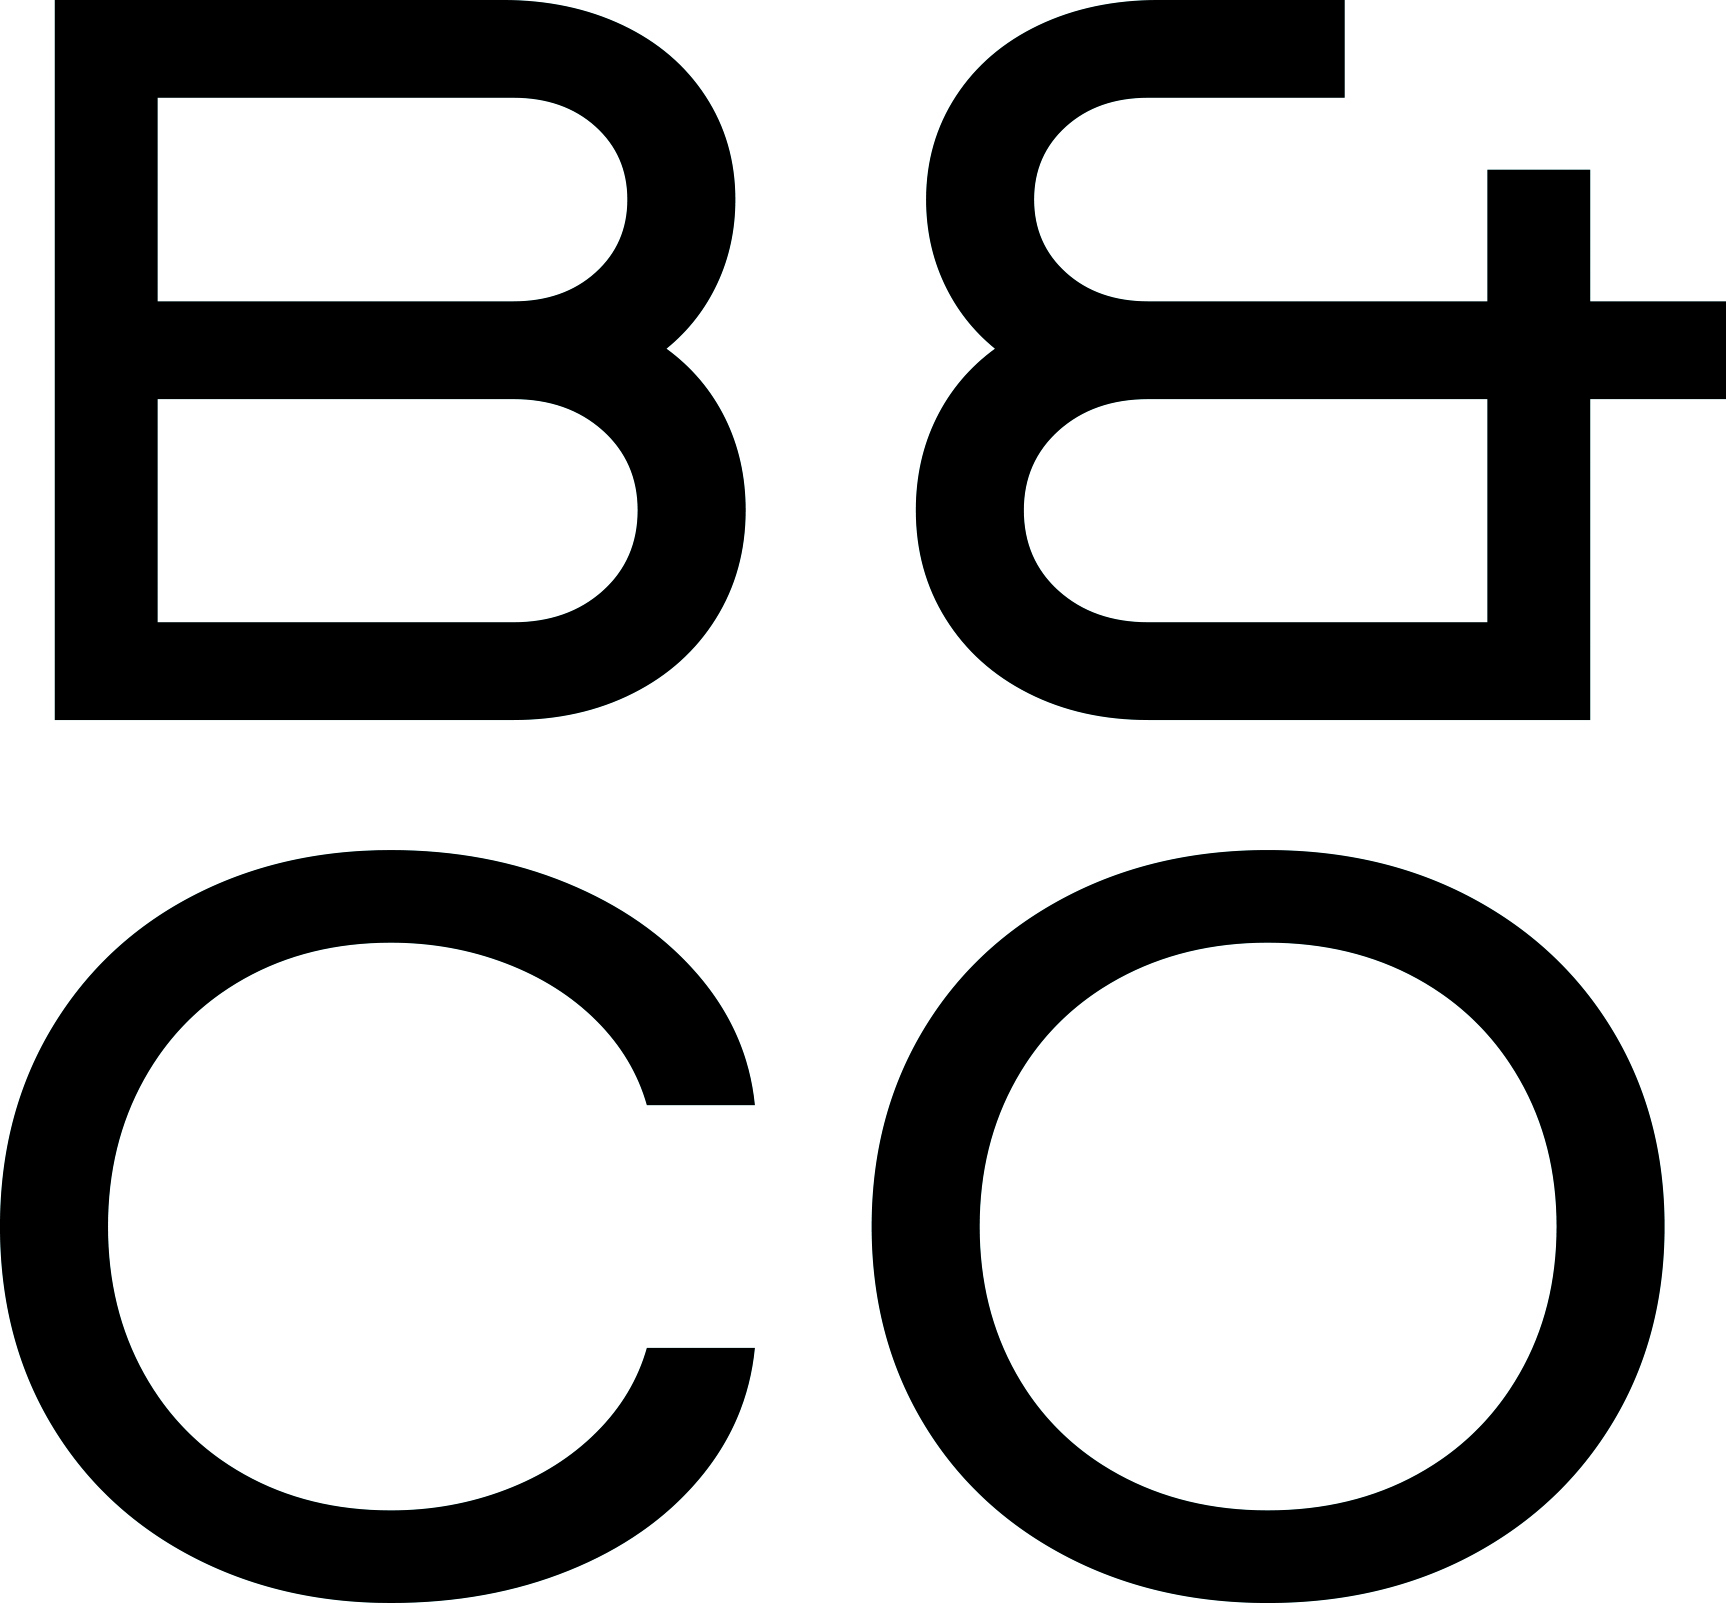 B CO B